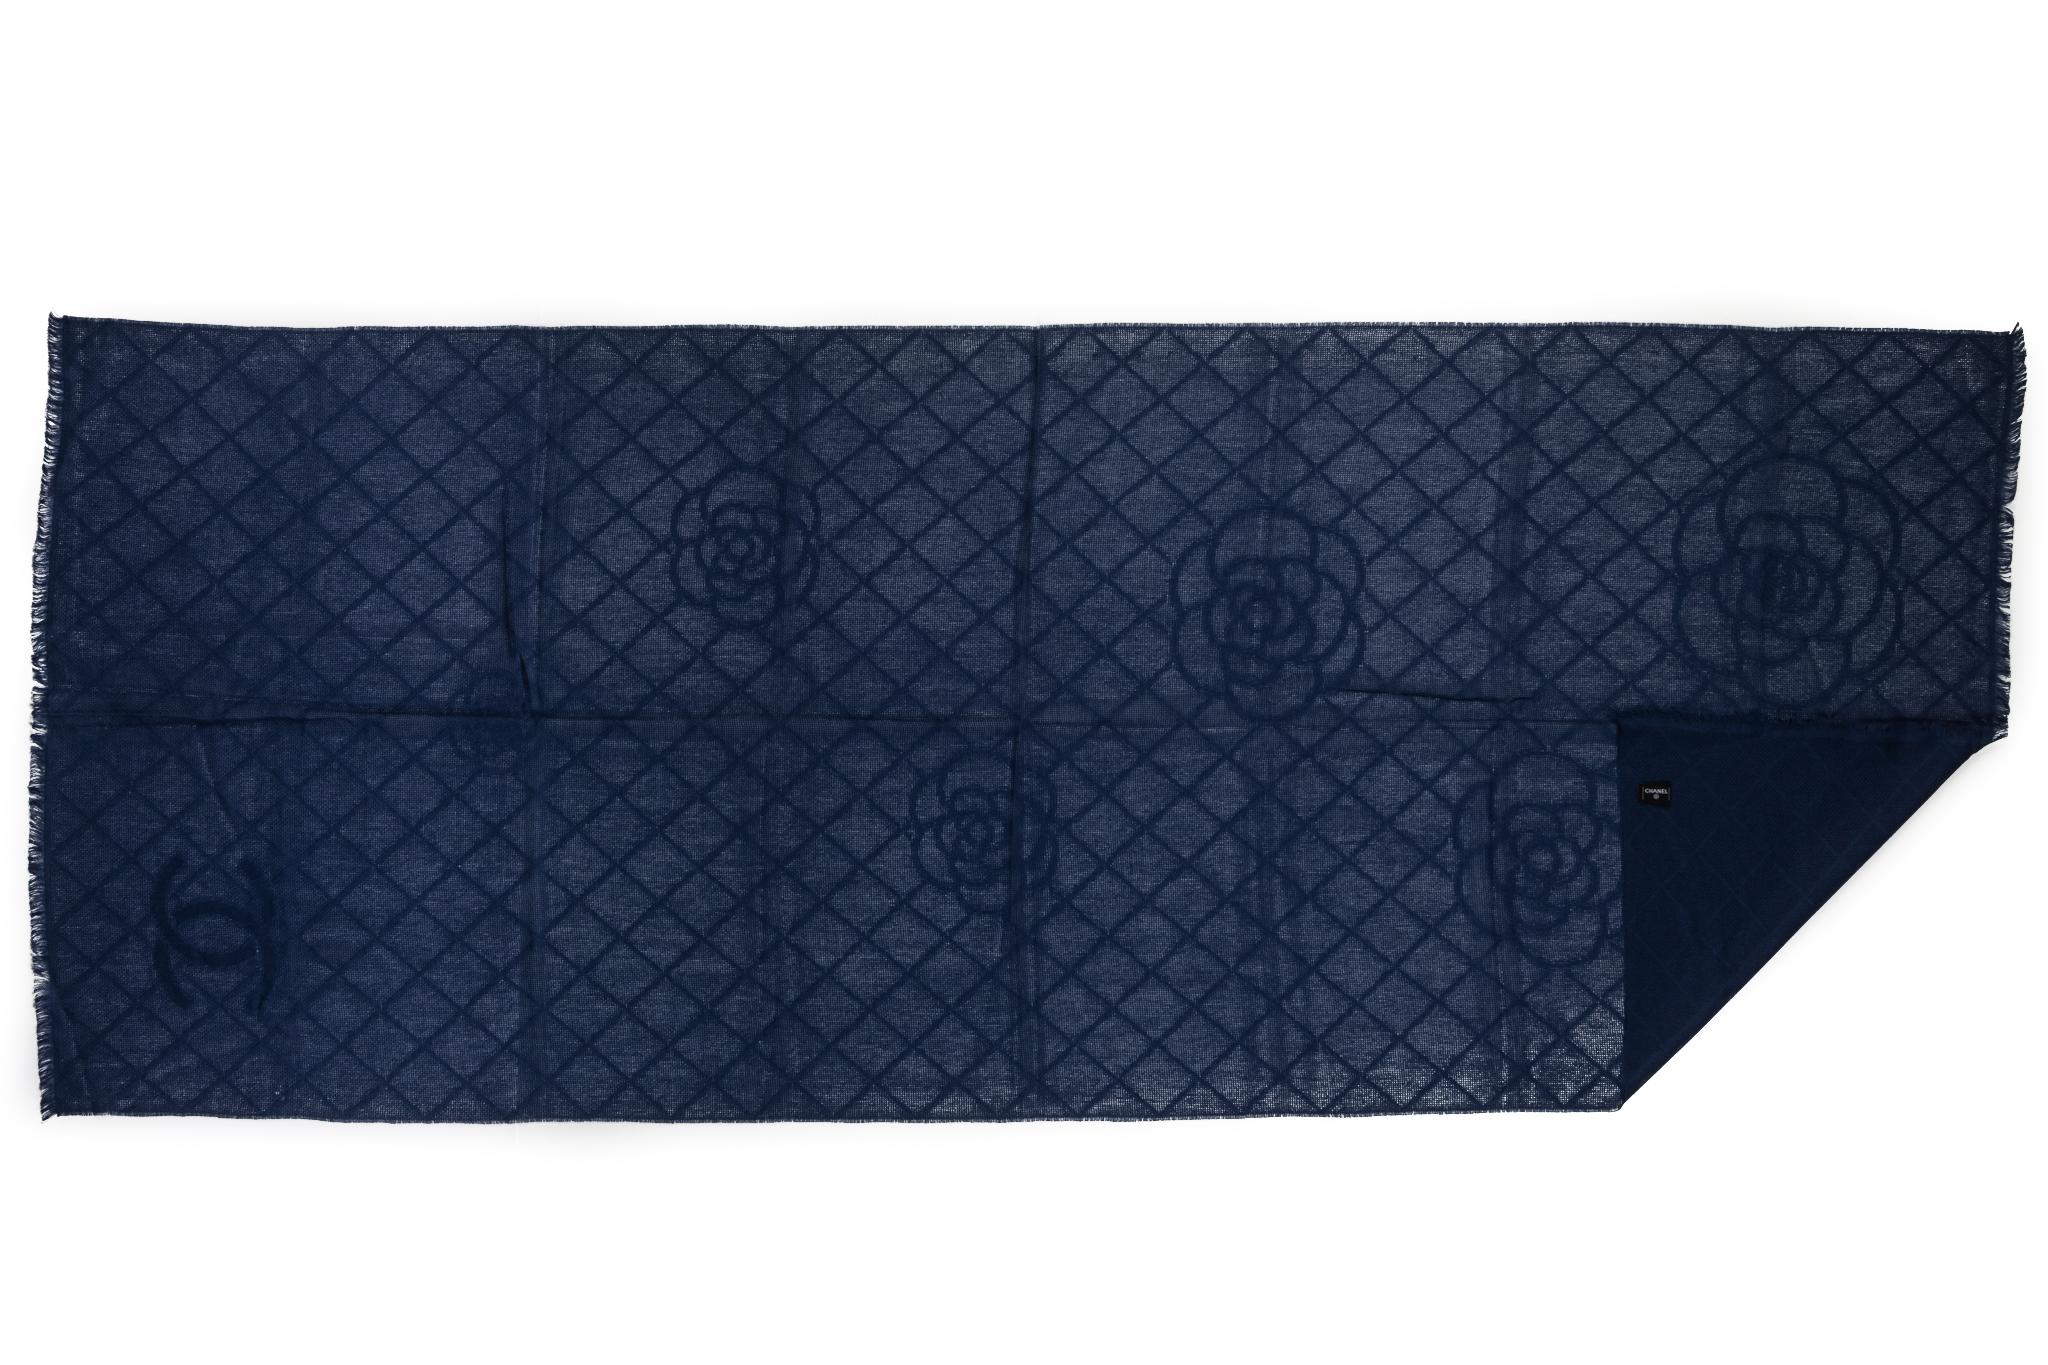 Chanel brandneuer Schal aus Kaschmir und marineblauem Kamelien- und Logodesign. Pflegeetikett.